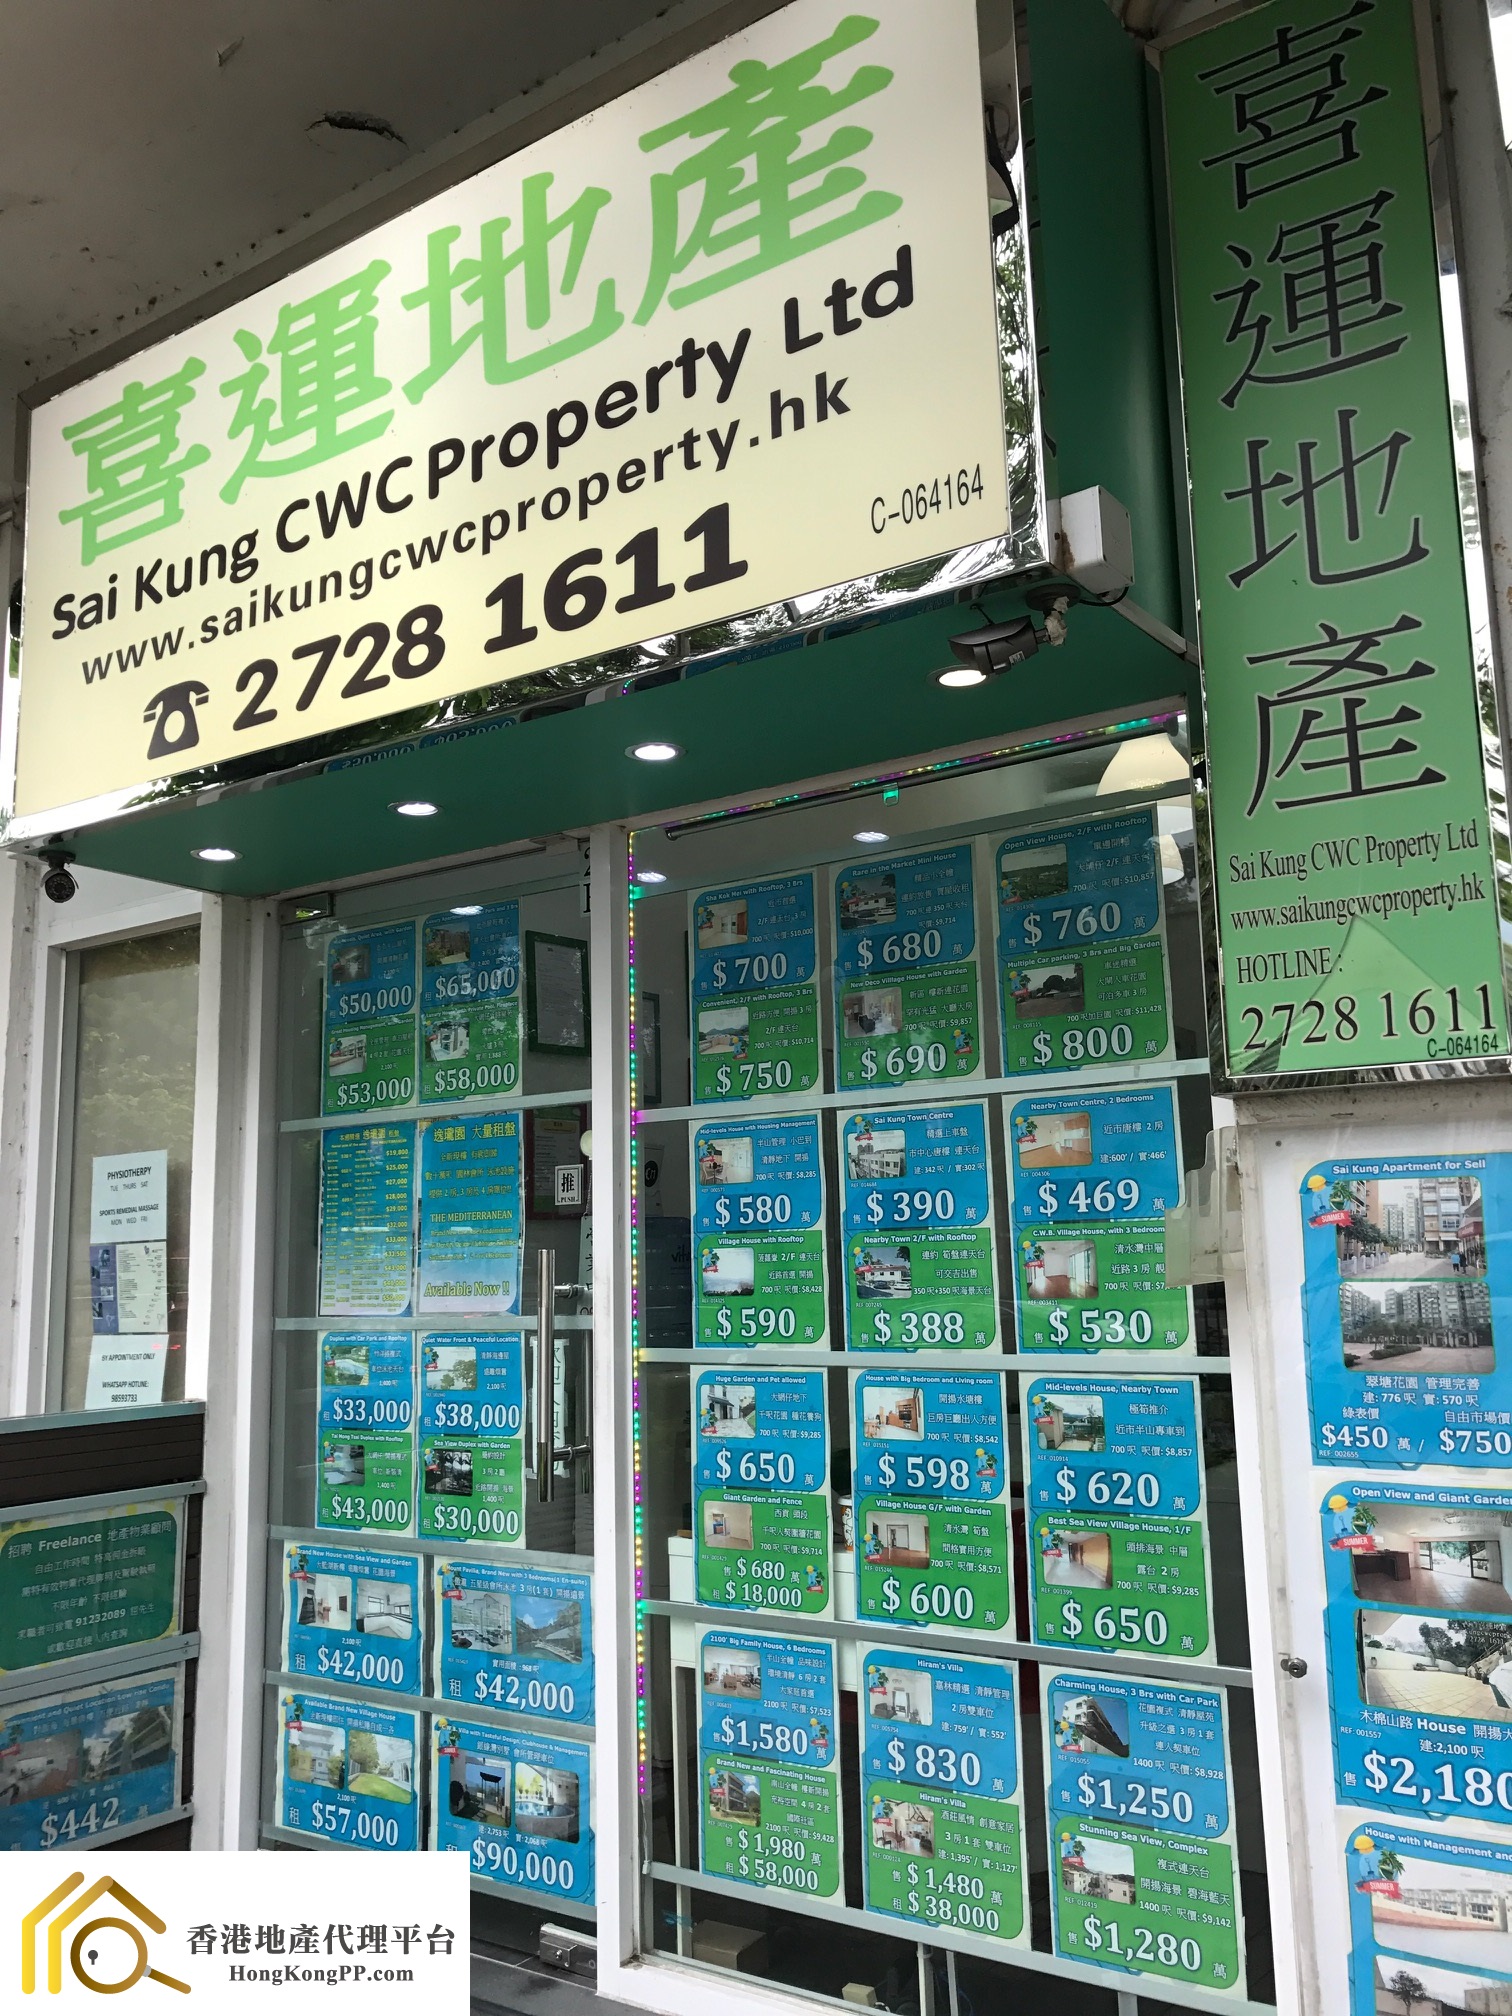 村屋地產代理: 西貢喜運地產  Sai Kung CWC Property